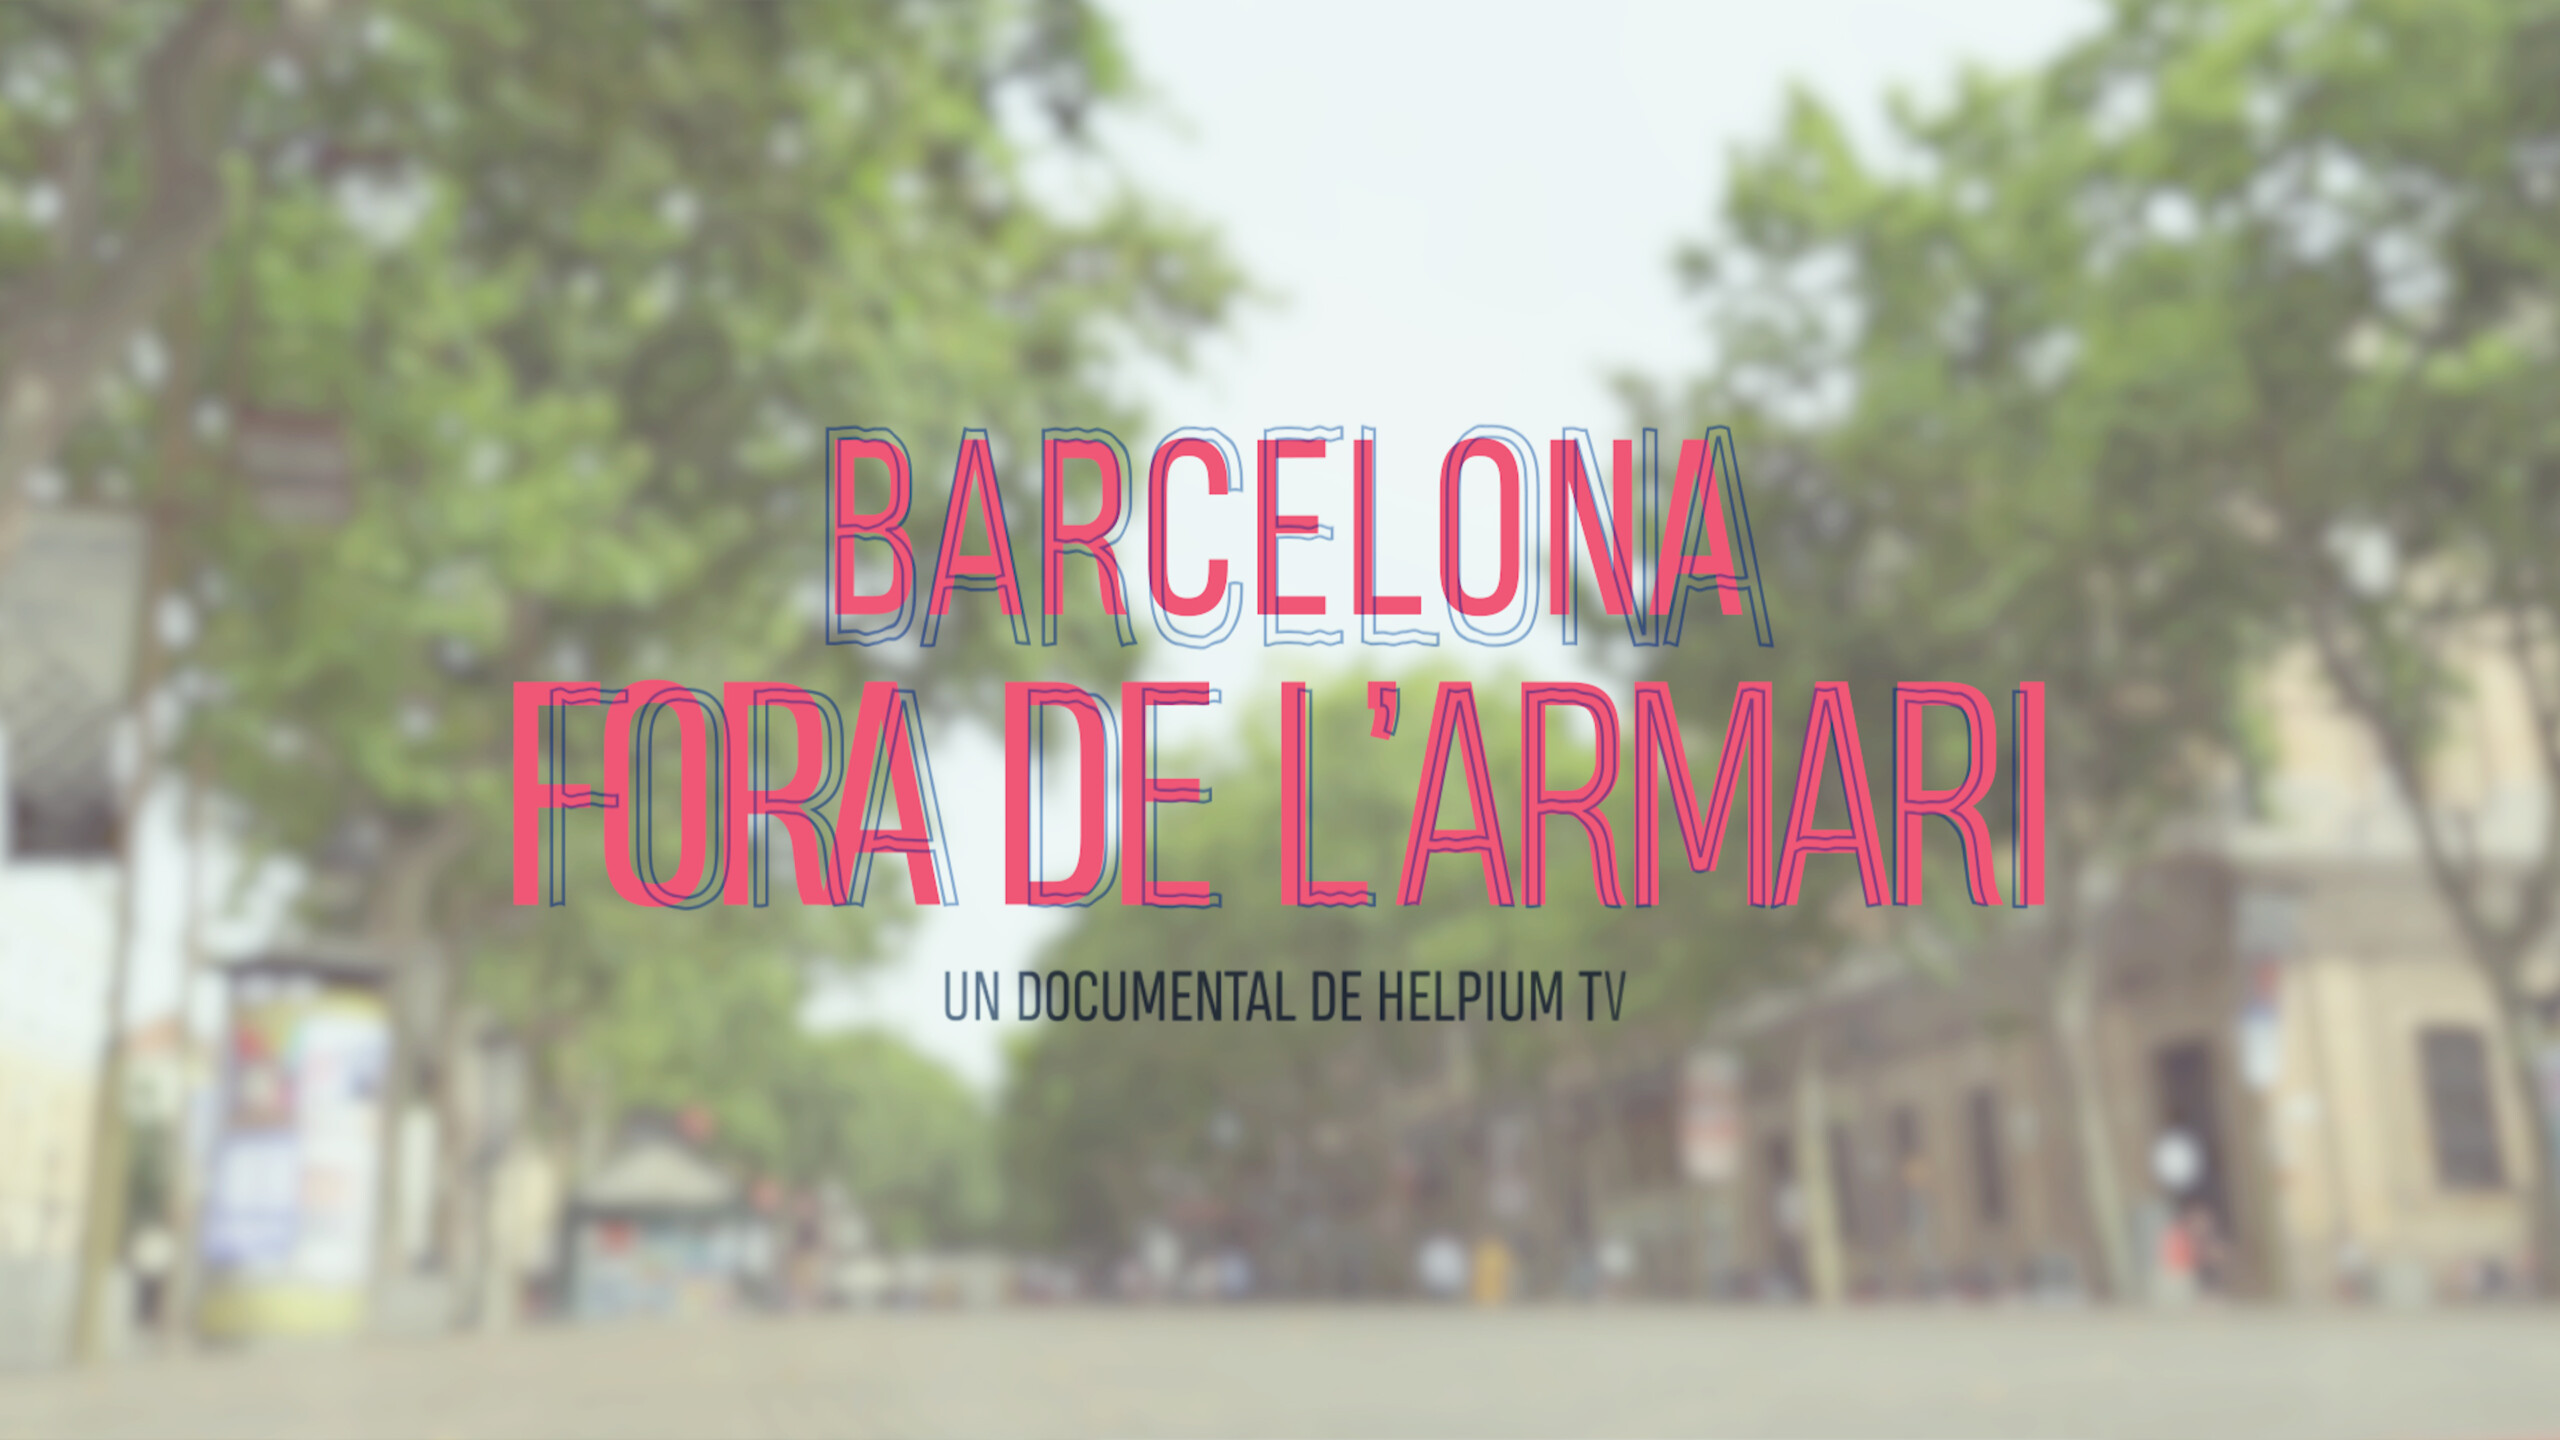 'Barcelona fuera del armario' ya tiene tráiler: así es el documental que analiza el origen de la lucha LGTB en España